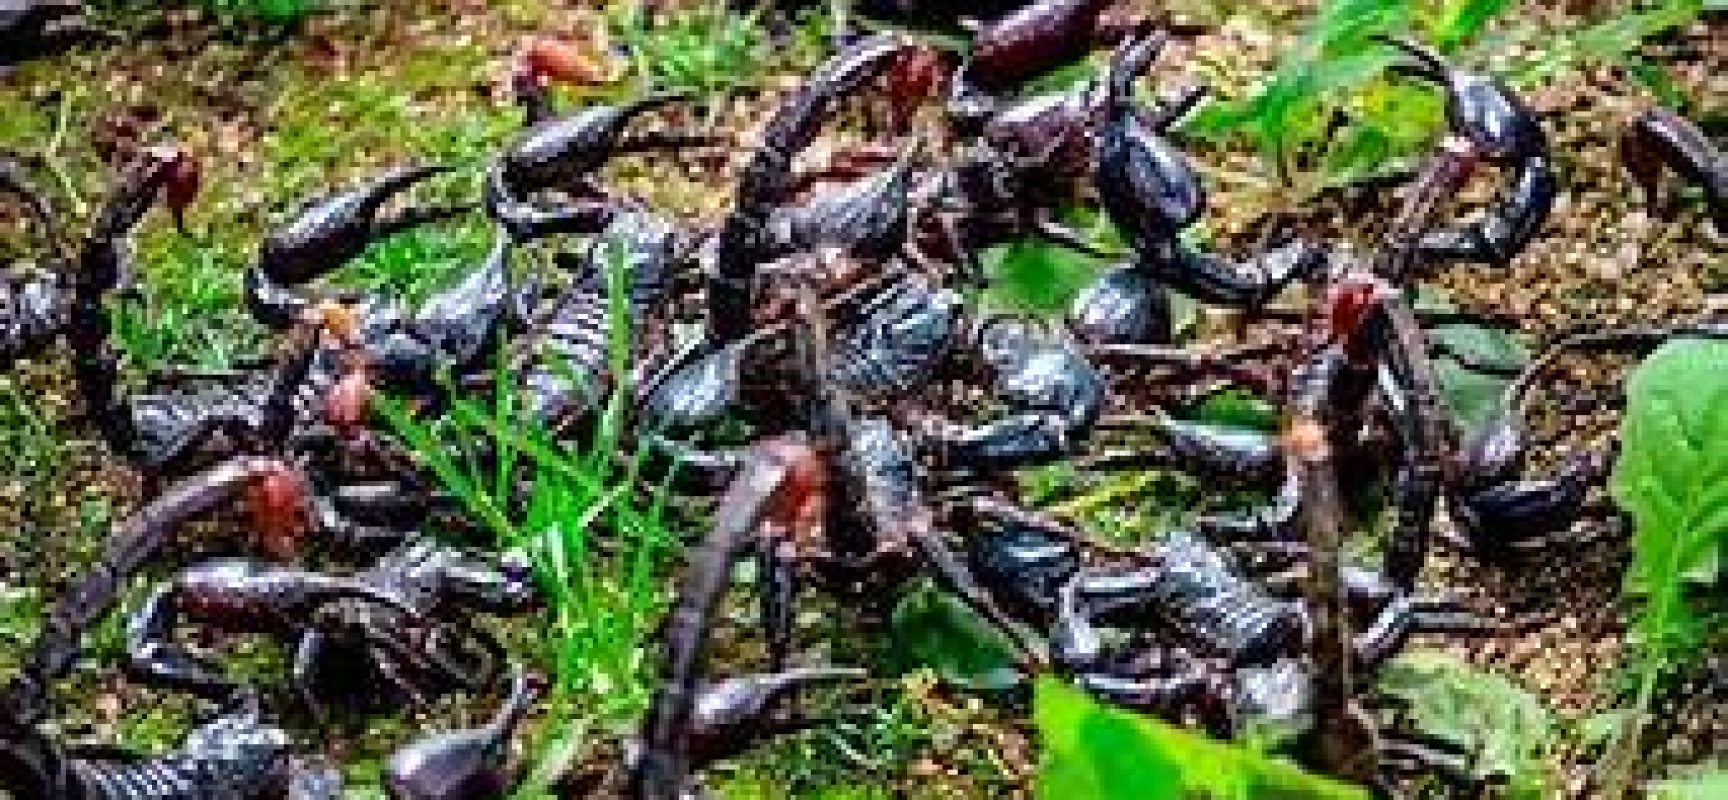 Saúde alerta para picadas de escorpião, mais comuns no verão